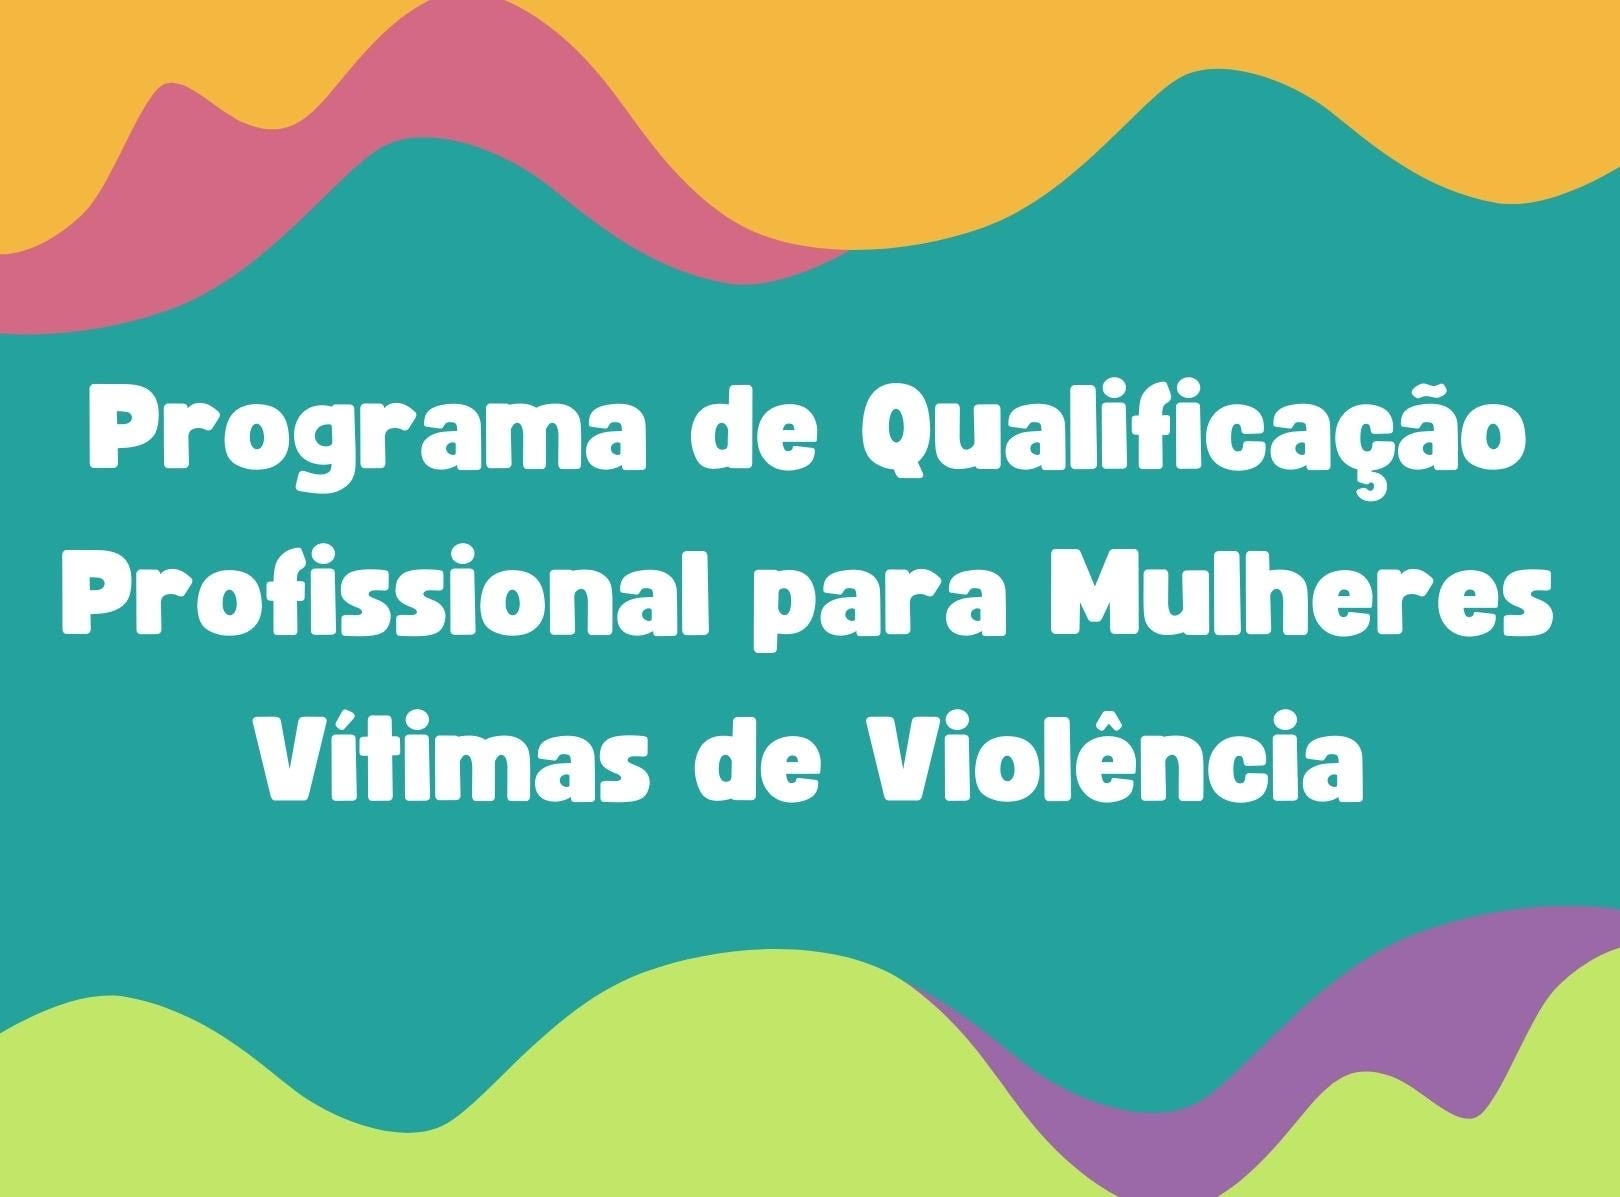 Semul e Semtas anunciam Programa de Qualificação Profissional para Mulheres Vítimas de Violência